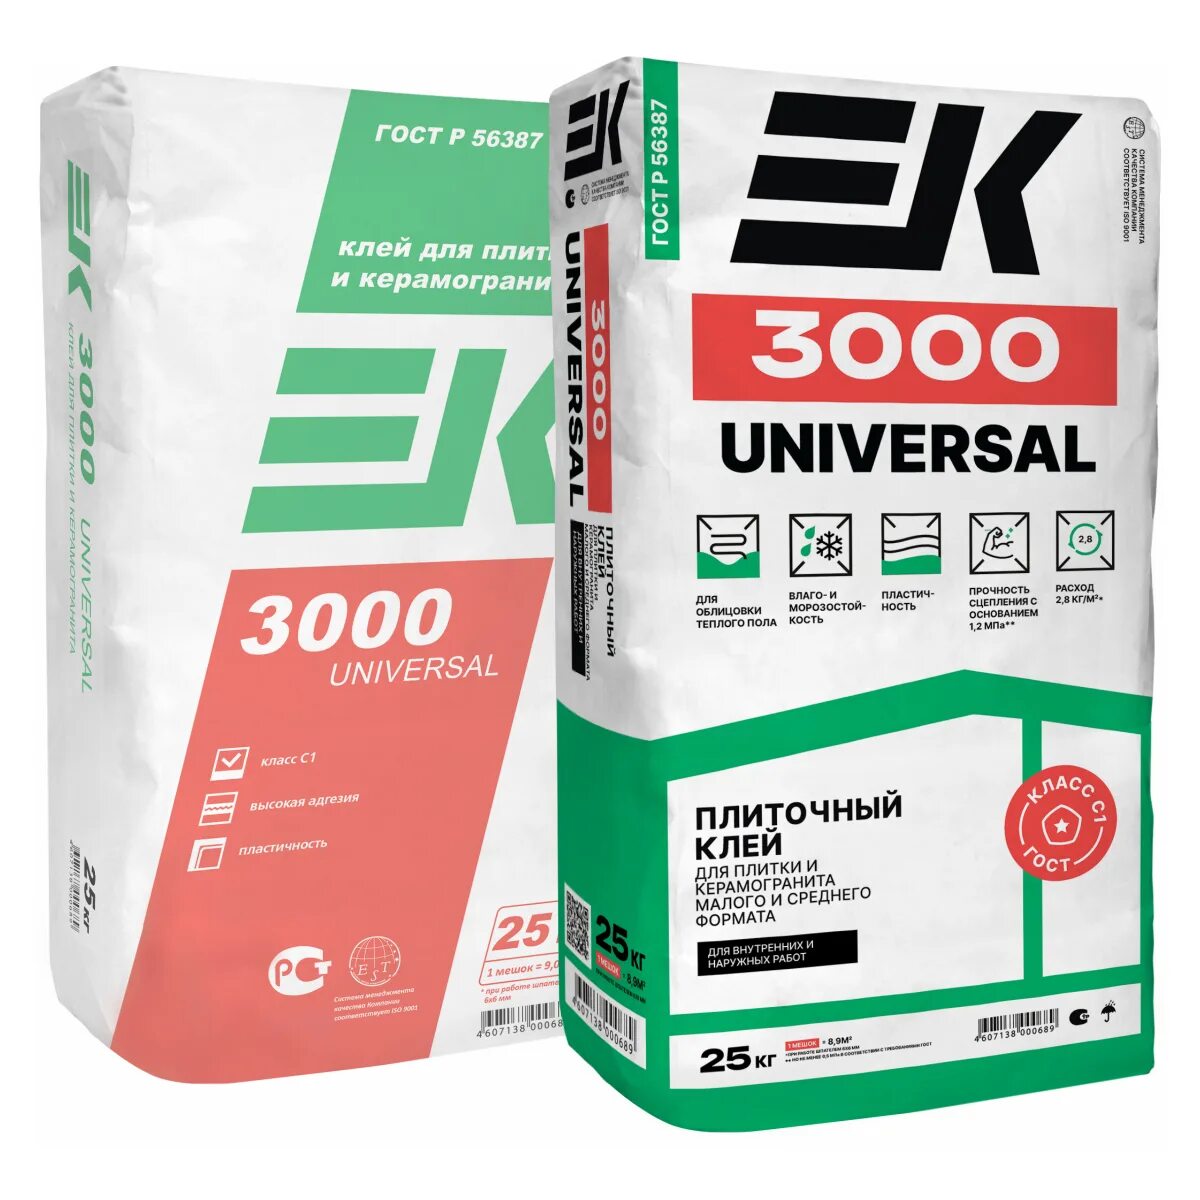 Ek 3000 плиточный клей. Ek 3000 Universal плиточный клей/25 кг. Клей для плитки 3000 Universal 25 кг ЕК. Ek плиточный клей Ek 3000 25 кг.